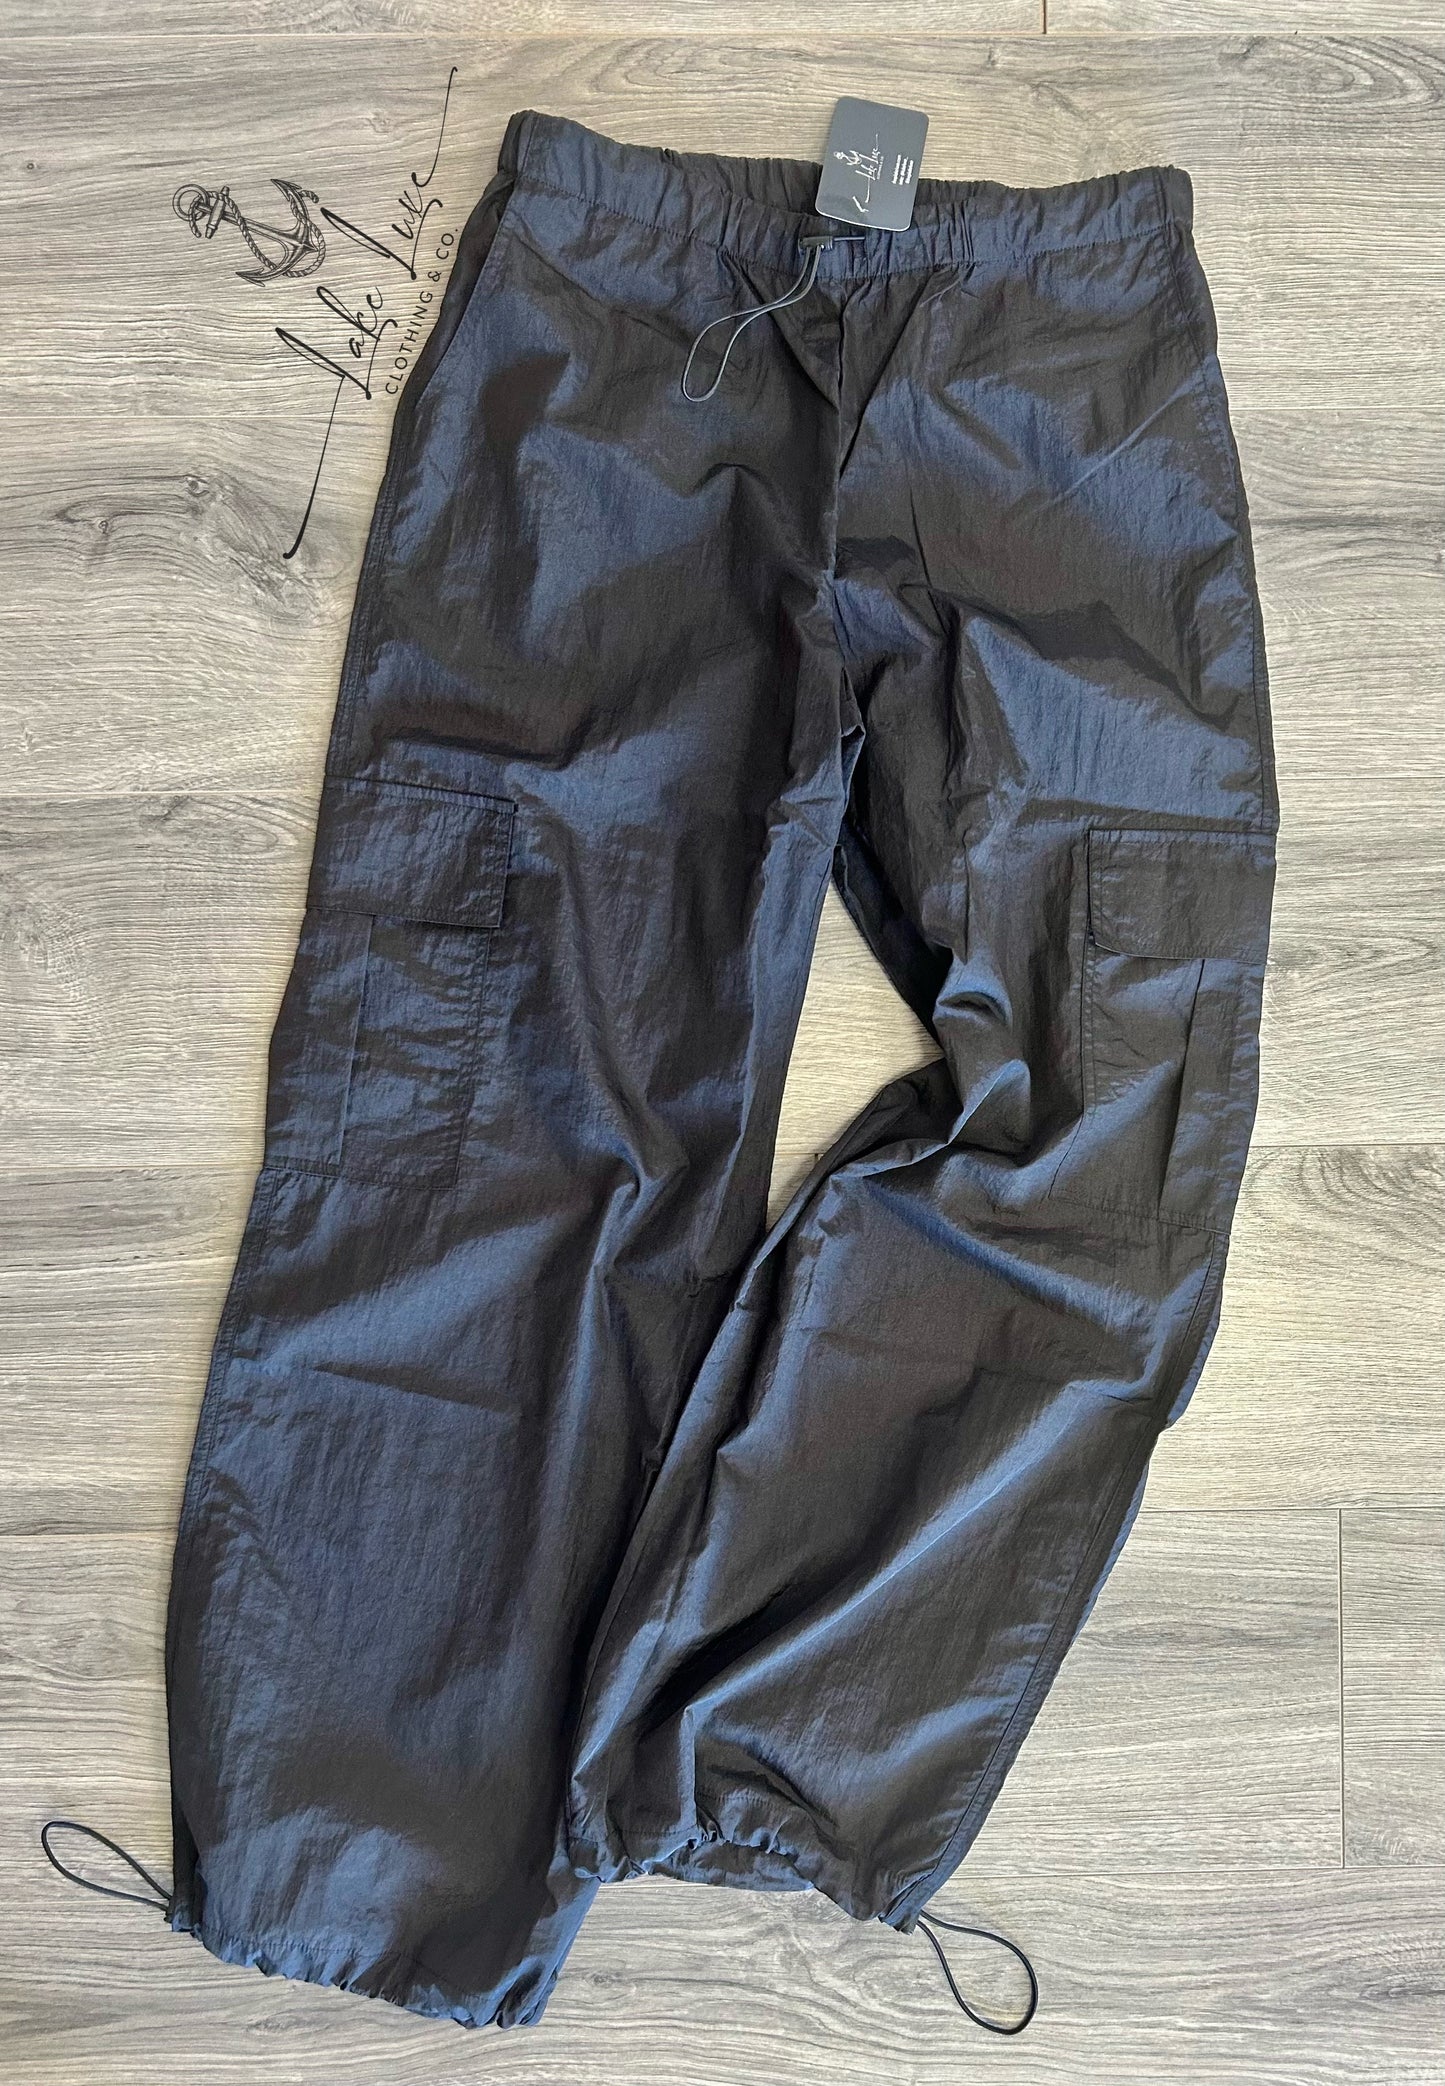 Black cargo / parachute pants